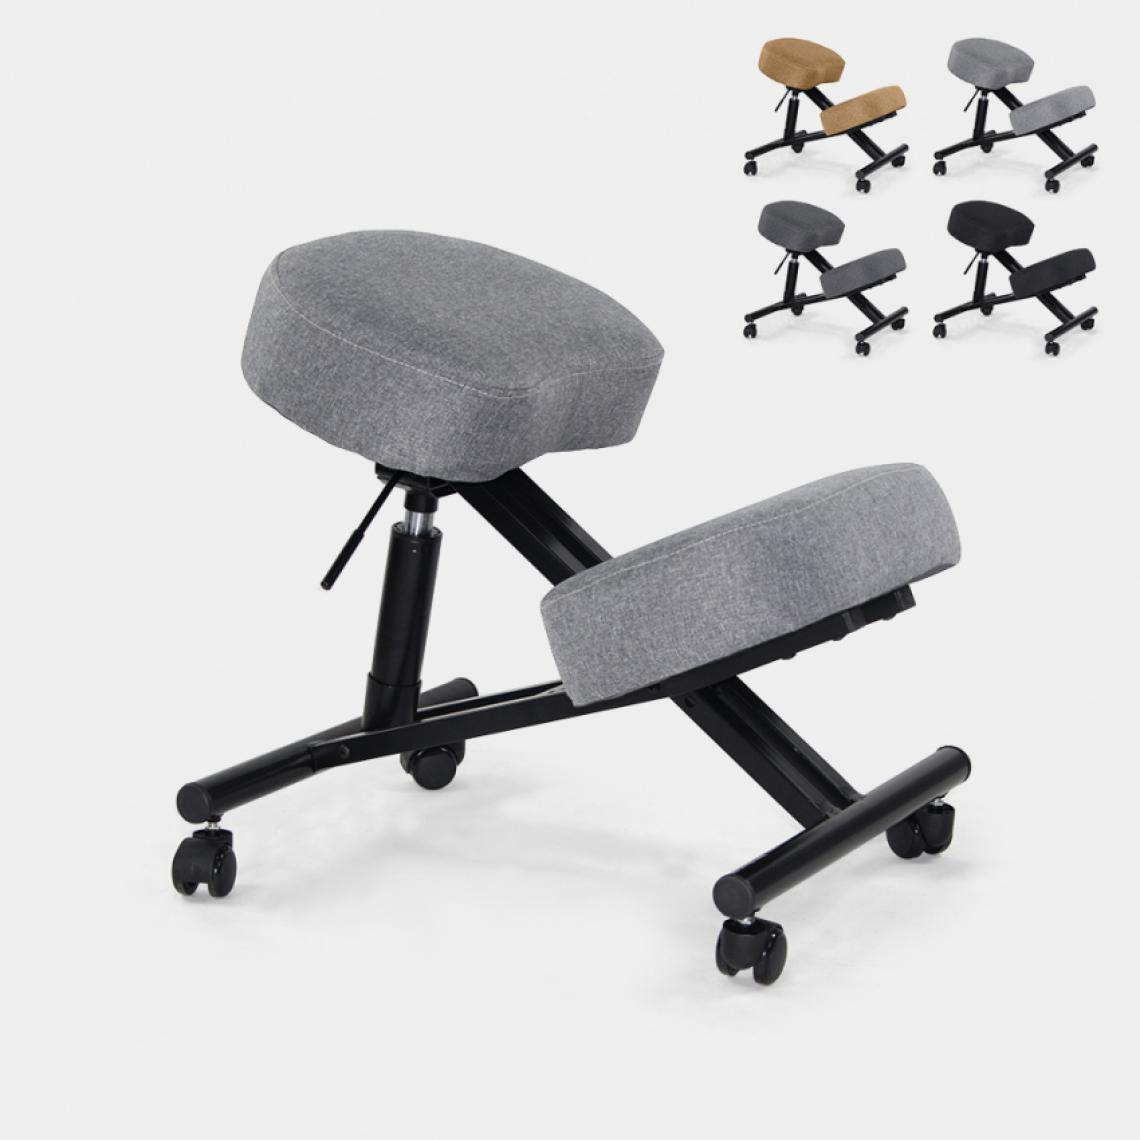 Bodyline - Healt And Massage - Chaise orthopédique suédoise ergonomique en tissu et en métal Balance Lux, Couleur: Gris - Chaises